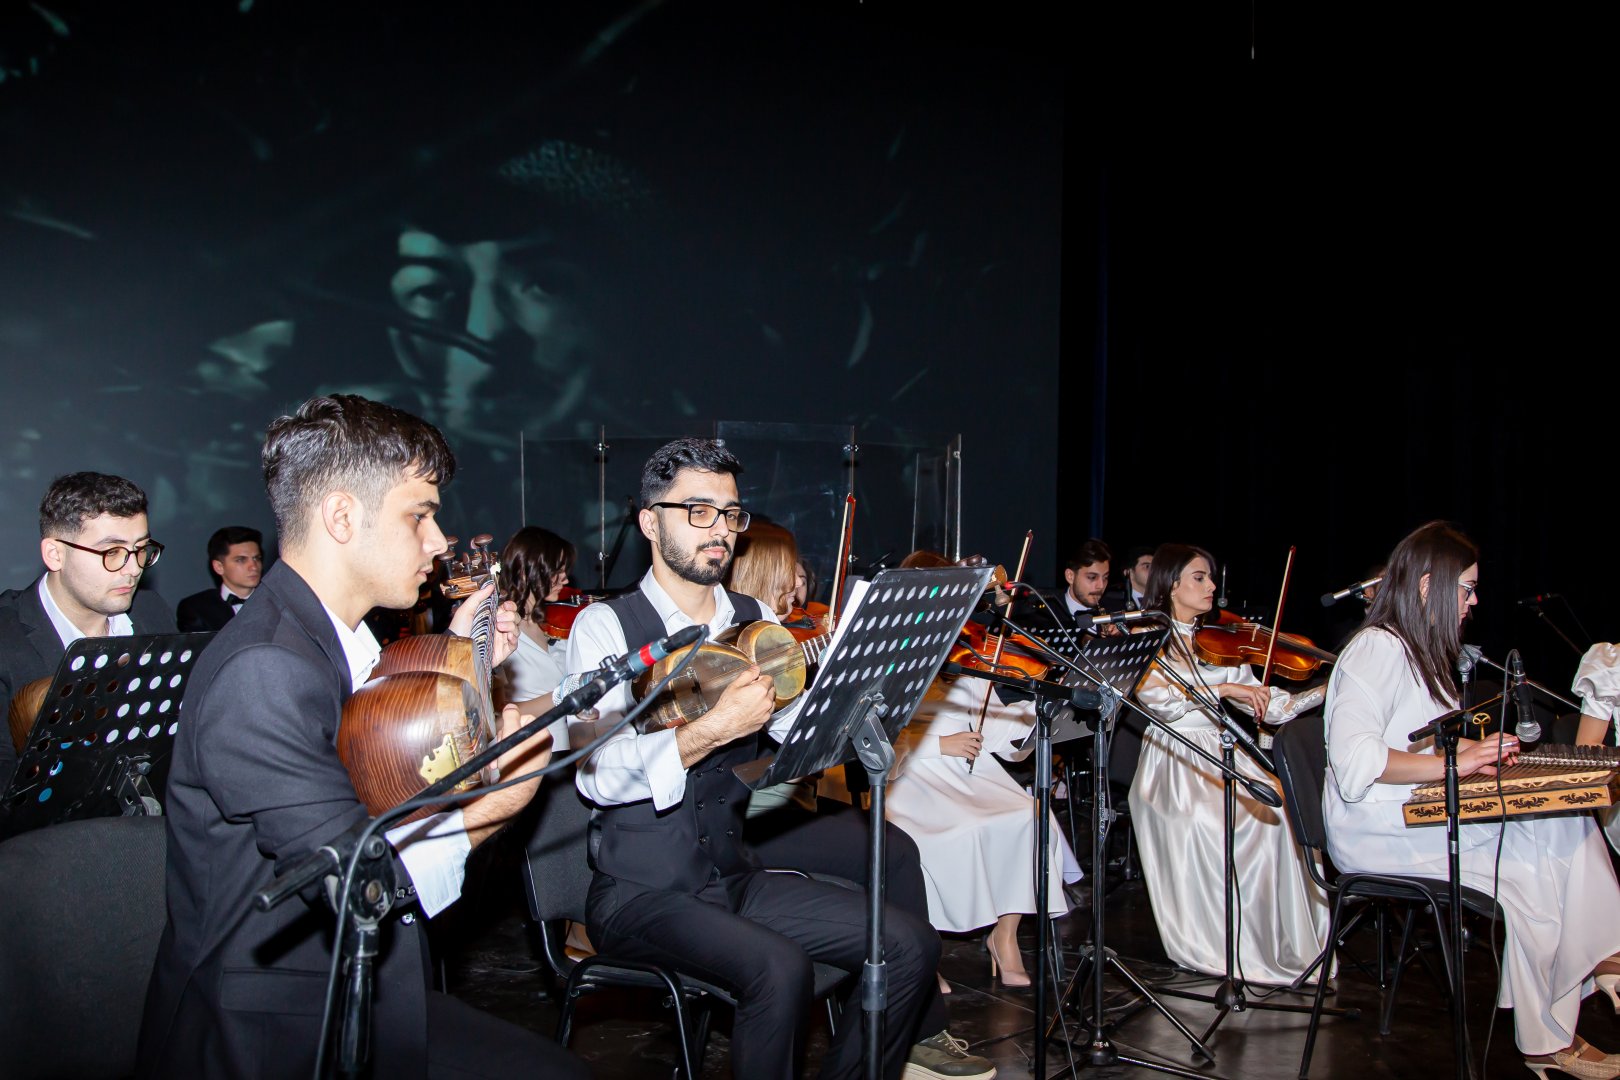 В Баку представлено мультимедийное шоу "Киноконцерт" с кадрами из азербайджанских фильмов (ФОТО)